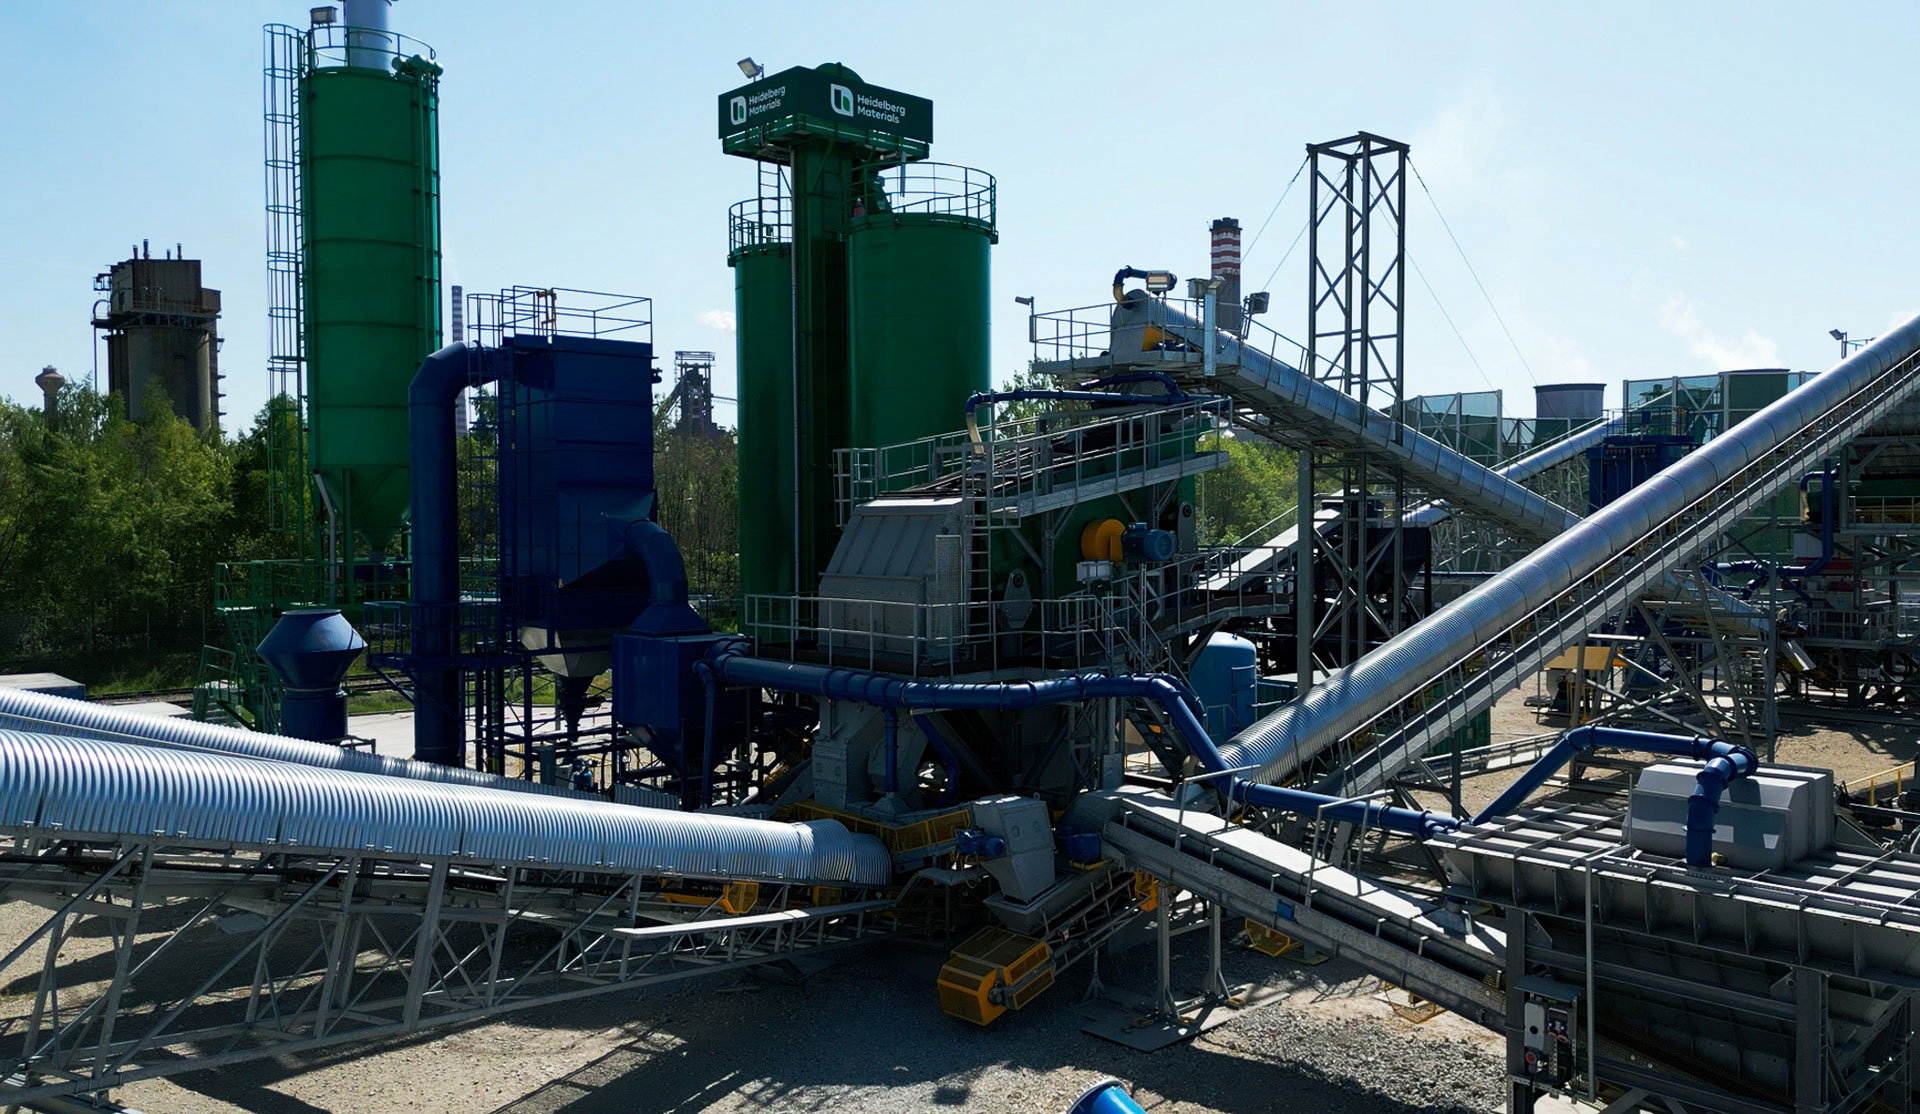 Ein Industriekomplex mit großen zylindrischen Lagertanks in Grün- und Blautönen, umgeben von einem komplexen Netzwerk aus Metallrohren und -strukturen unter einem klaren Himmel.